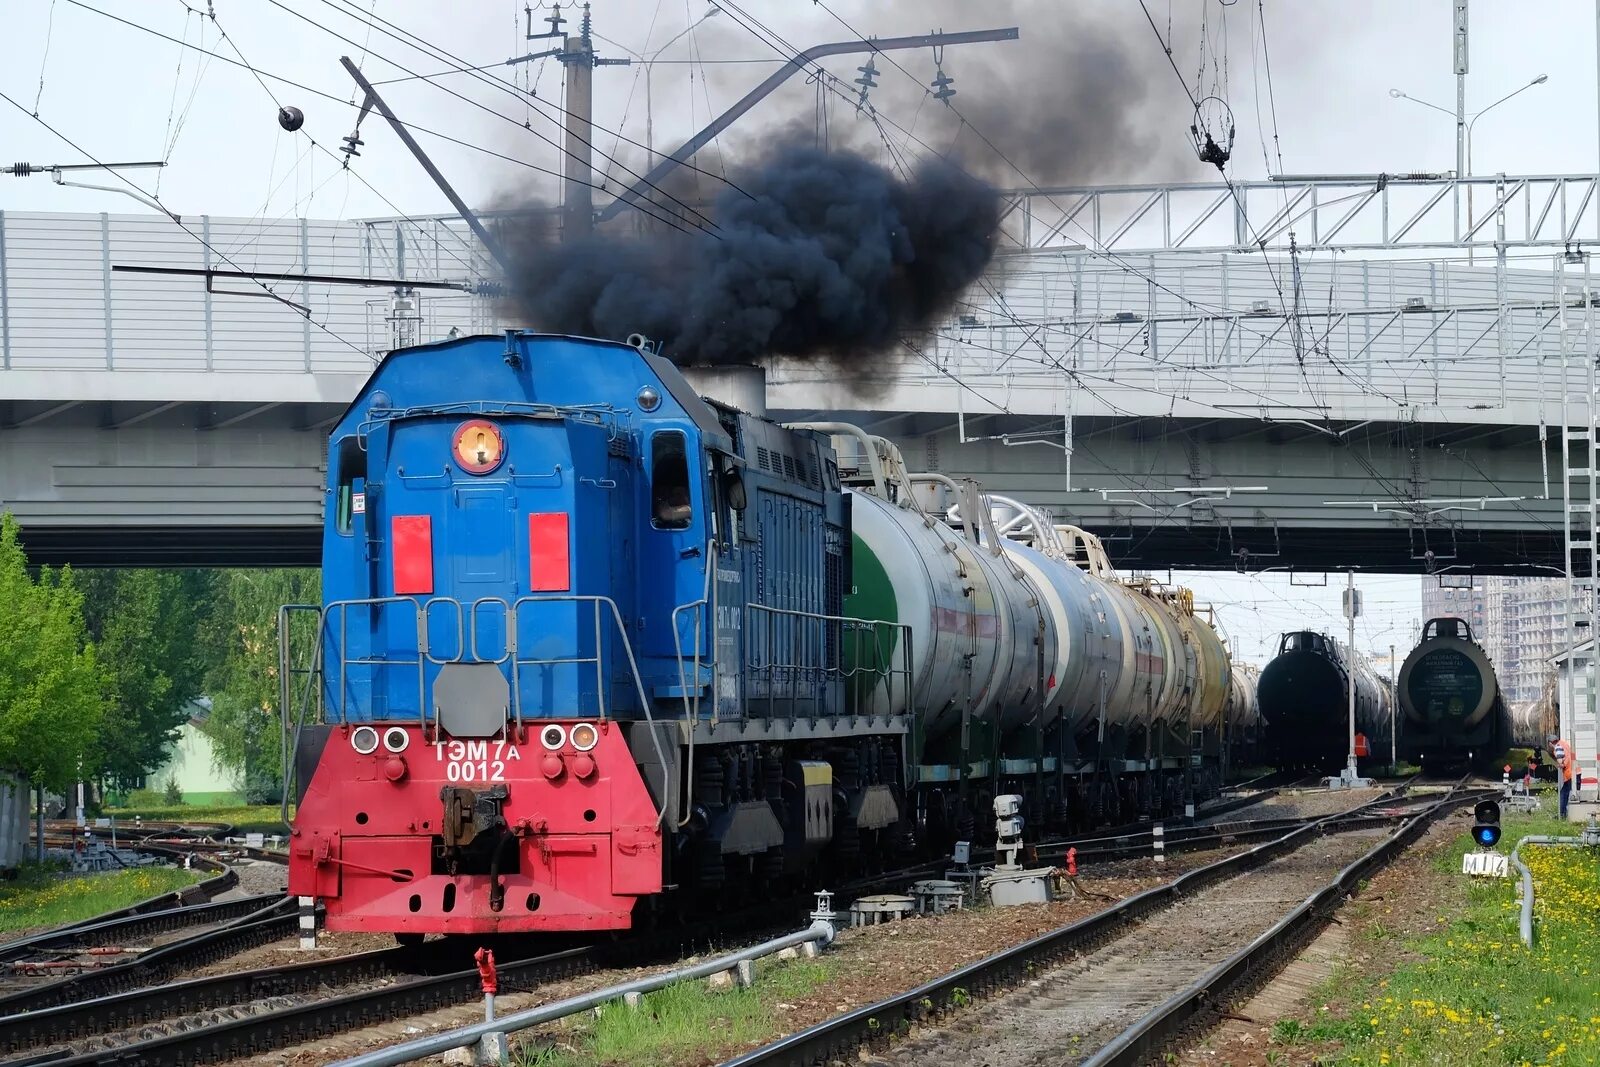 Технологического железнодорожного транспорта. Тэм7а Яничкино. Тэм7 тепловоз. Промышленный Железнодорожный транспорт. Предприятие промышленного железнодорожного транспорта.